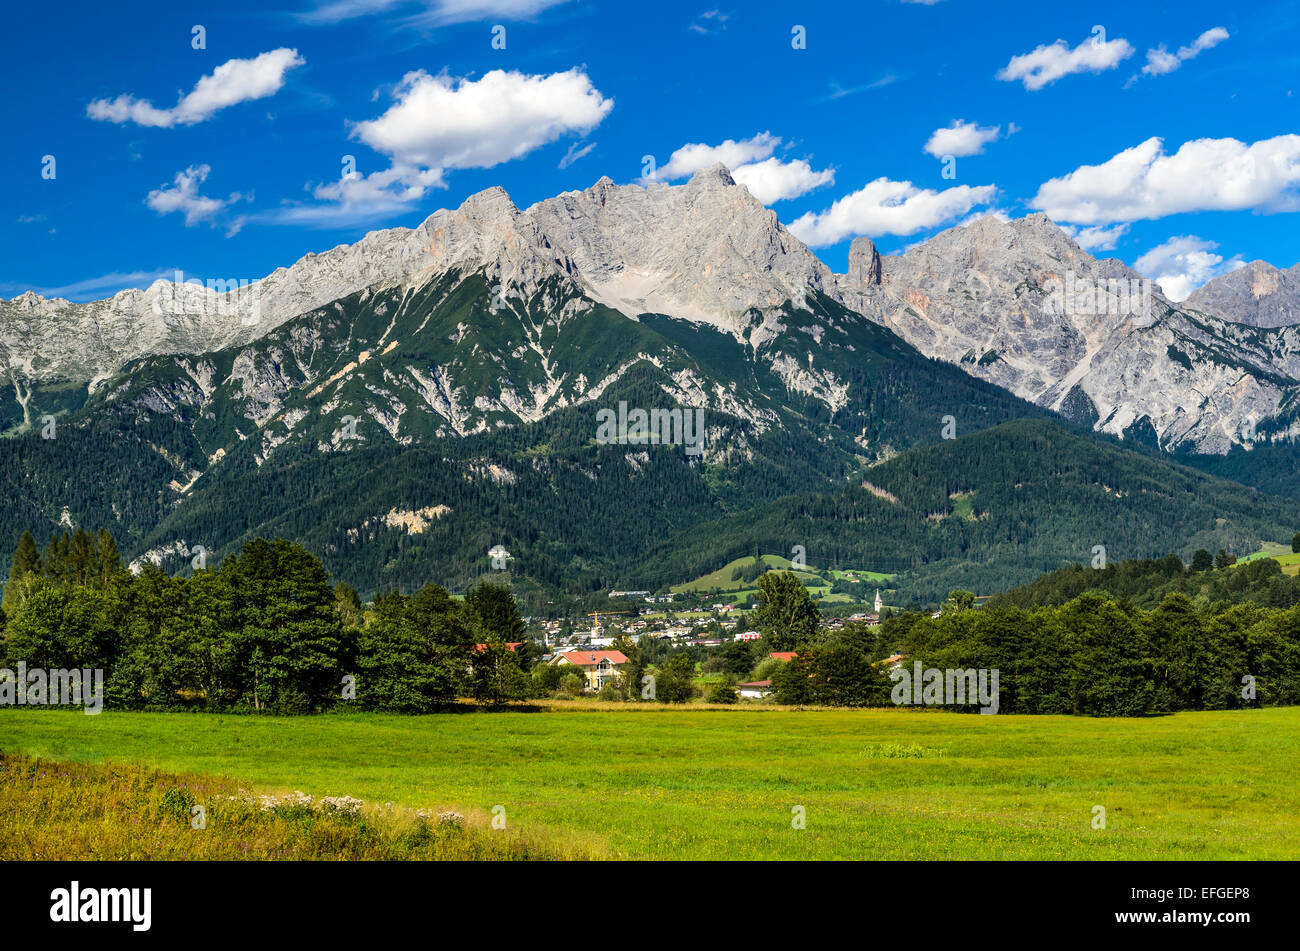 Austria. Sulle Alpi di Berchtesgaden gamma paesaggi con Saalfelden am Steinernen Meer piccola città, alpinismo Zell am See Foto Stock